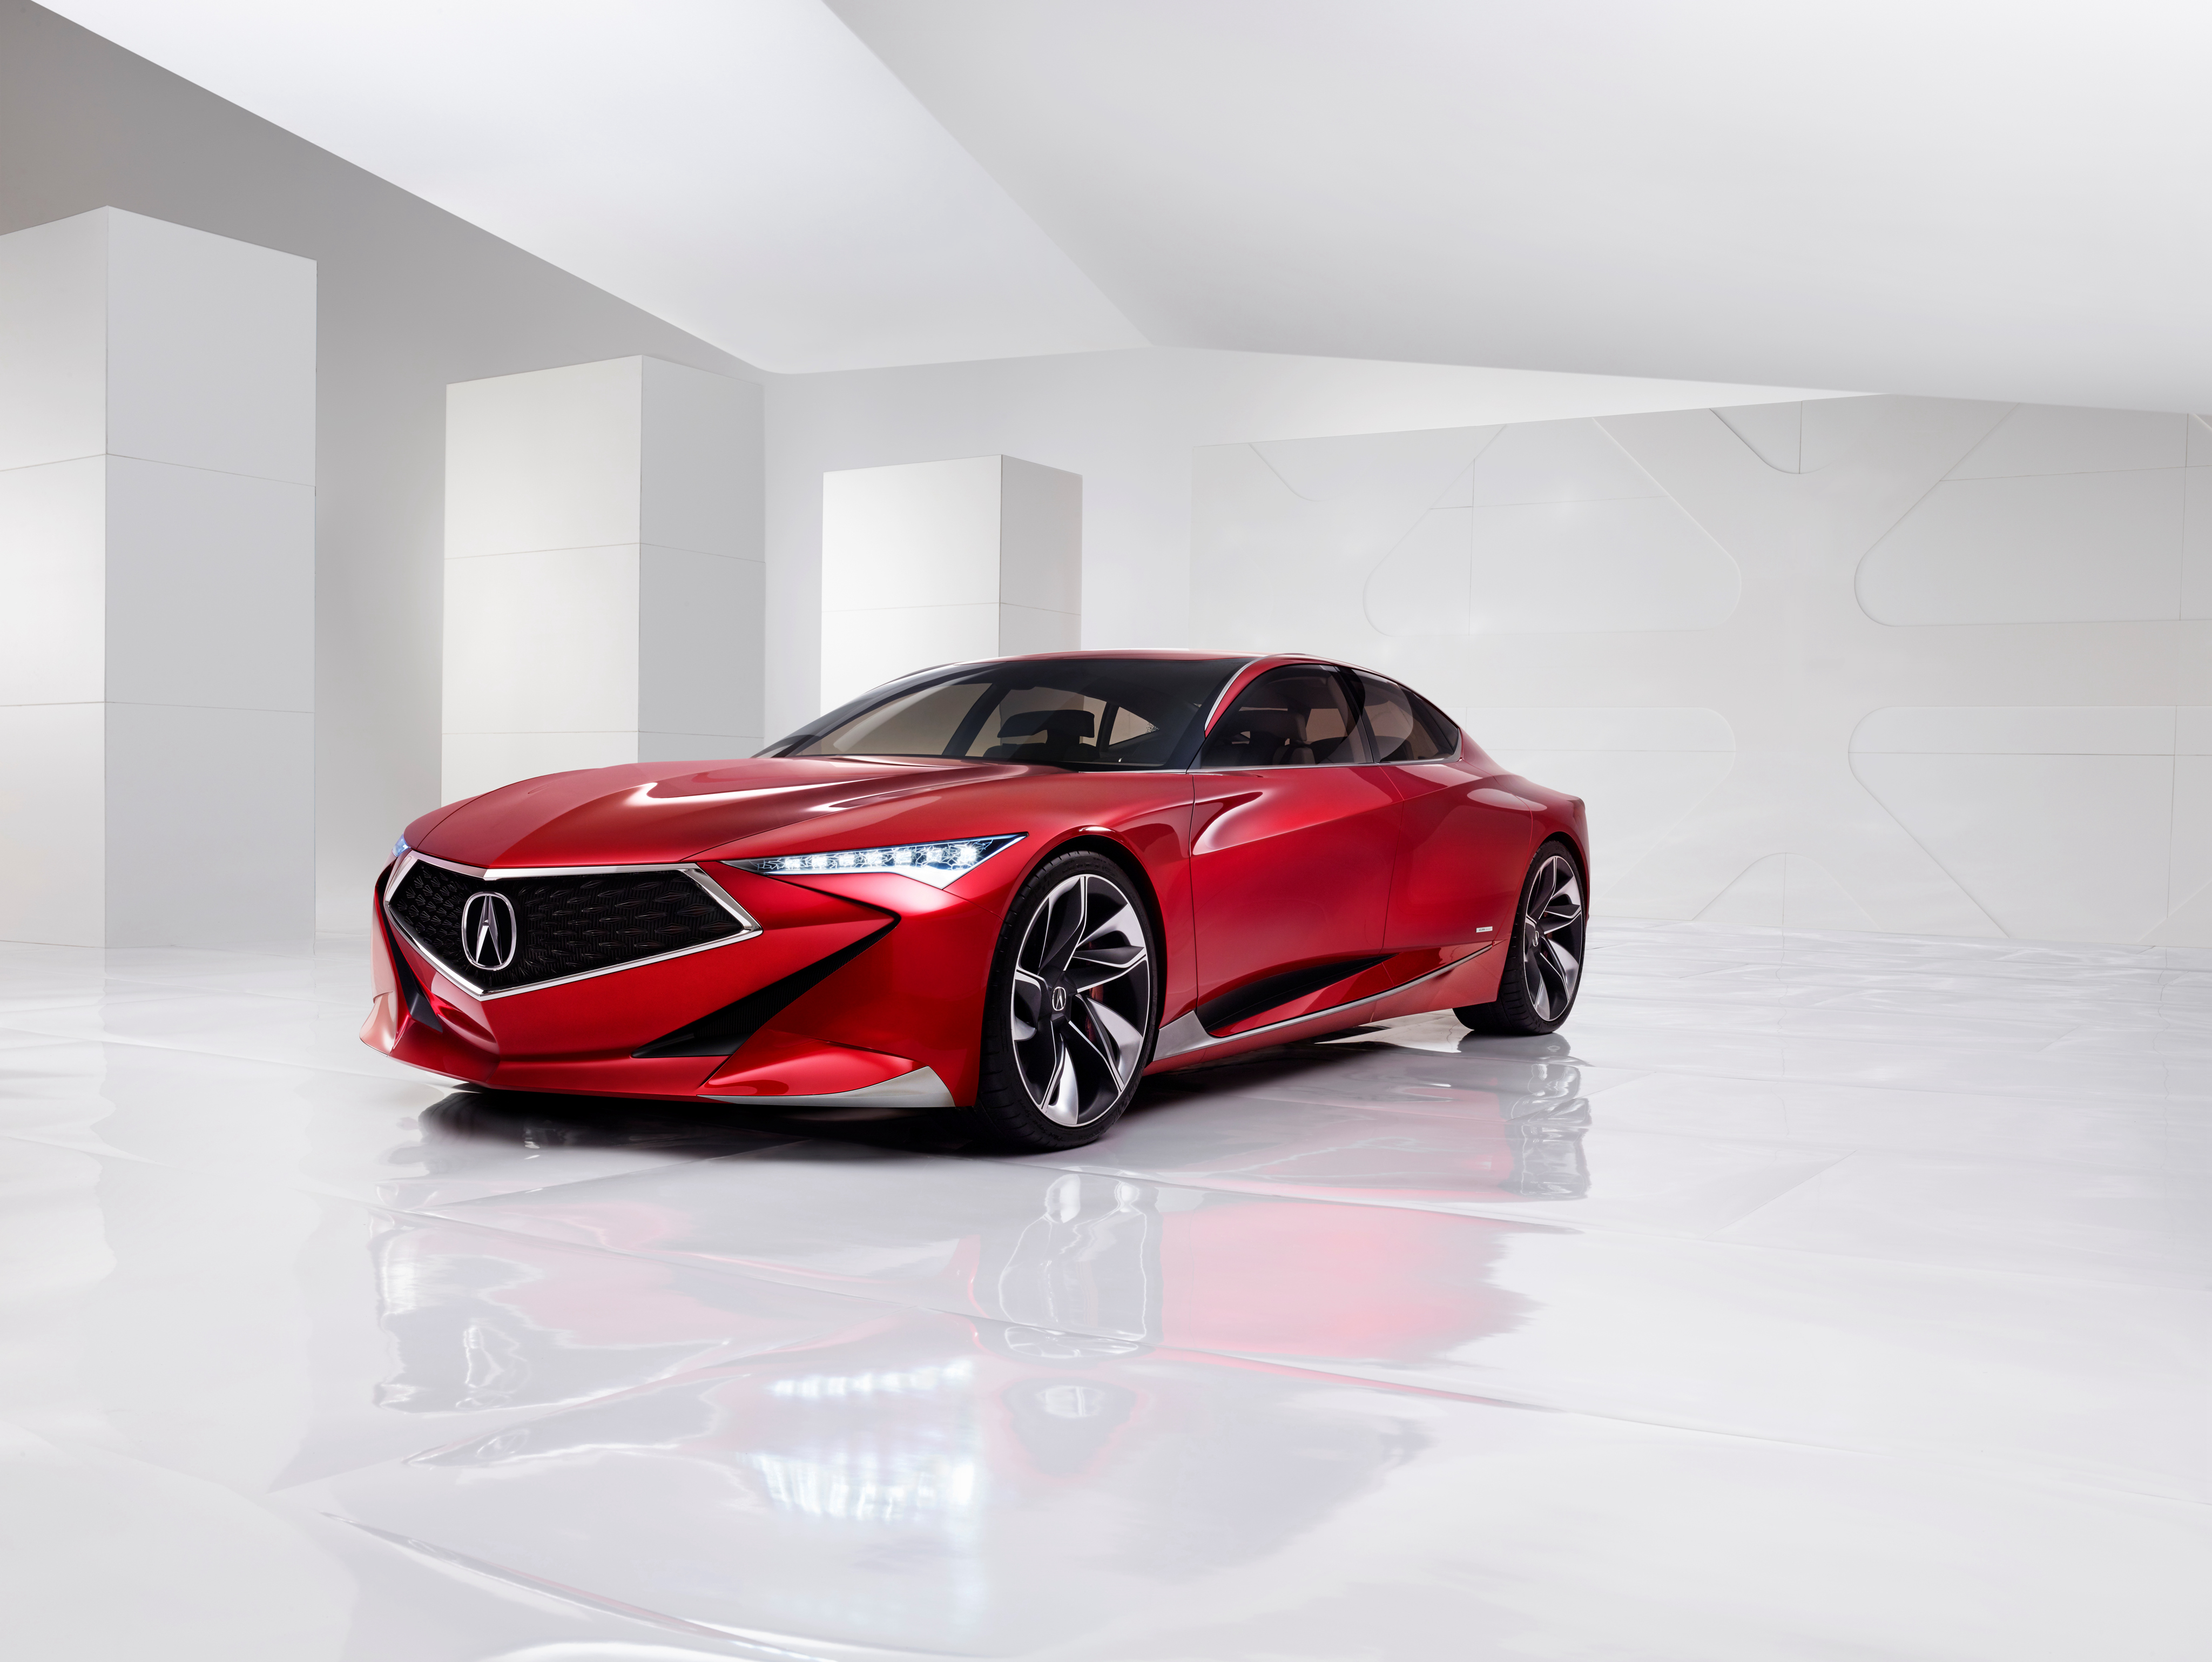 Будущее компании Acura в одном автомобиле